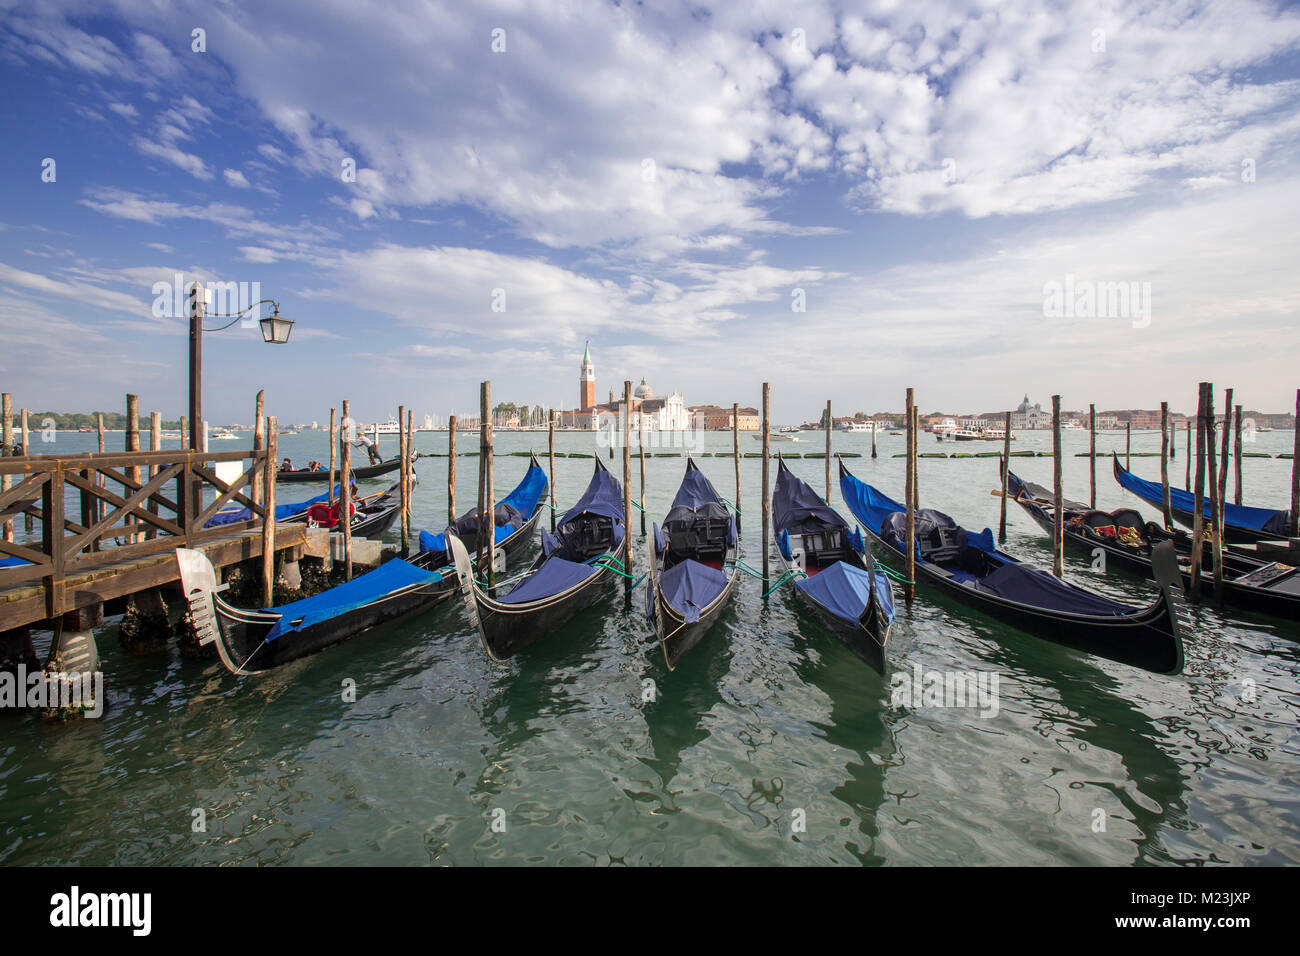 Gondolas at Saint Mark's Square with view of San Giorgio Maggiore island, Venice, Italy Stock Photo